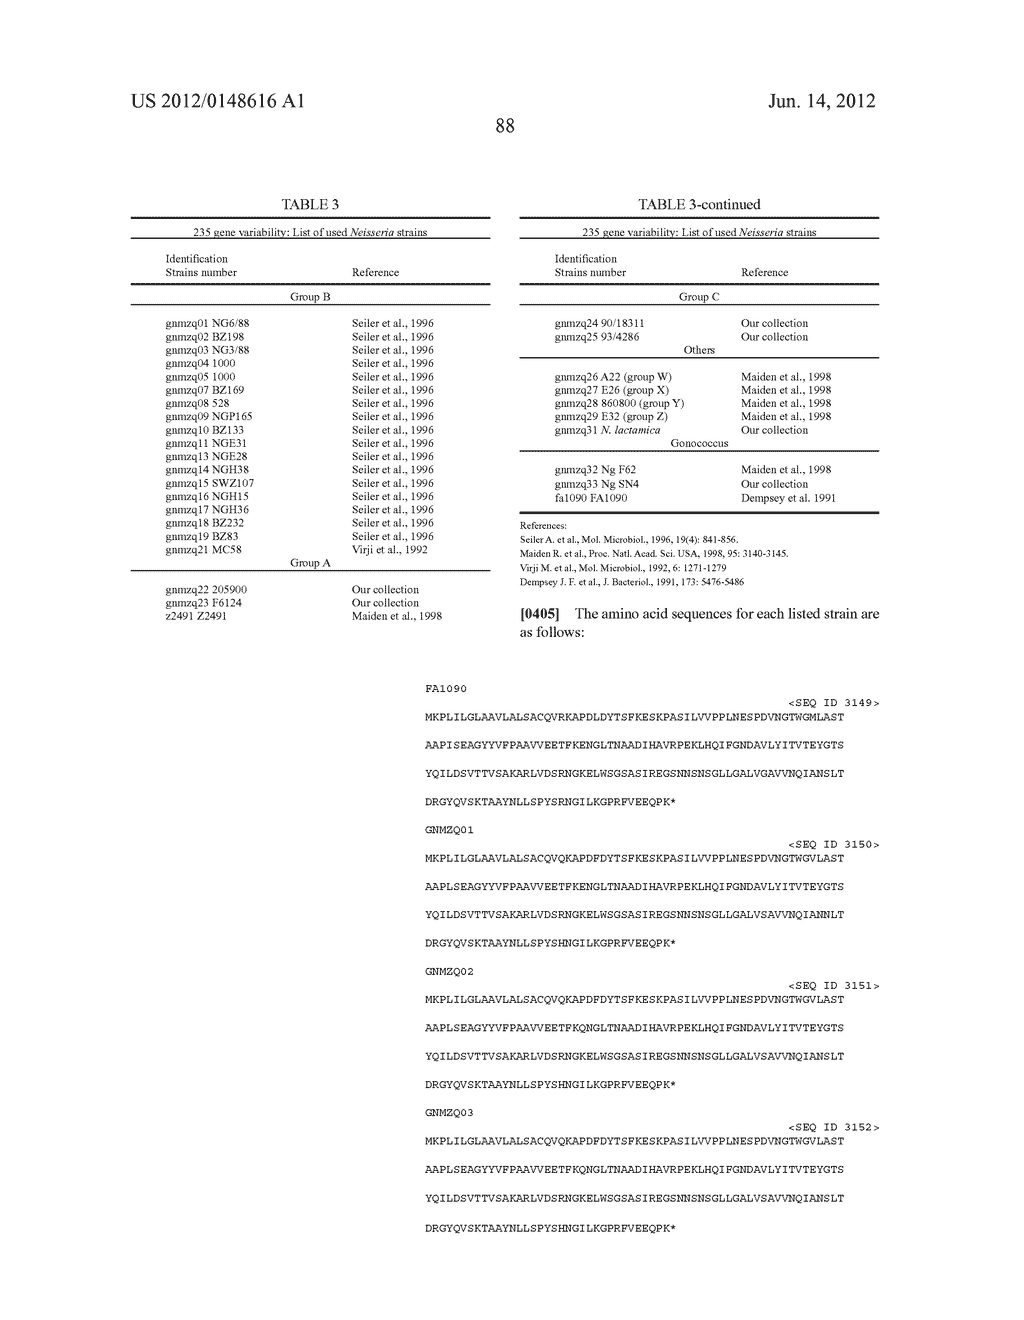 NEISSERIA MENINGITIDIS ANTIGENS AND COMPOSITIONS - diagram, schematic, and image 120